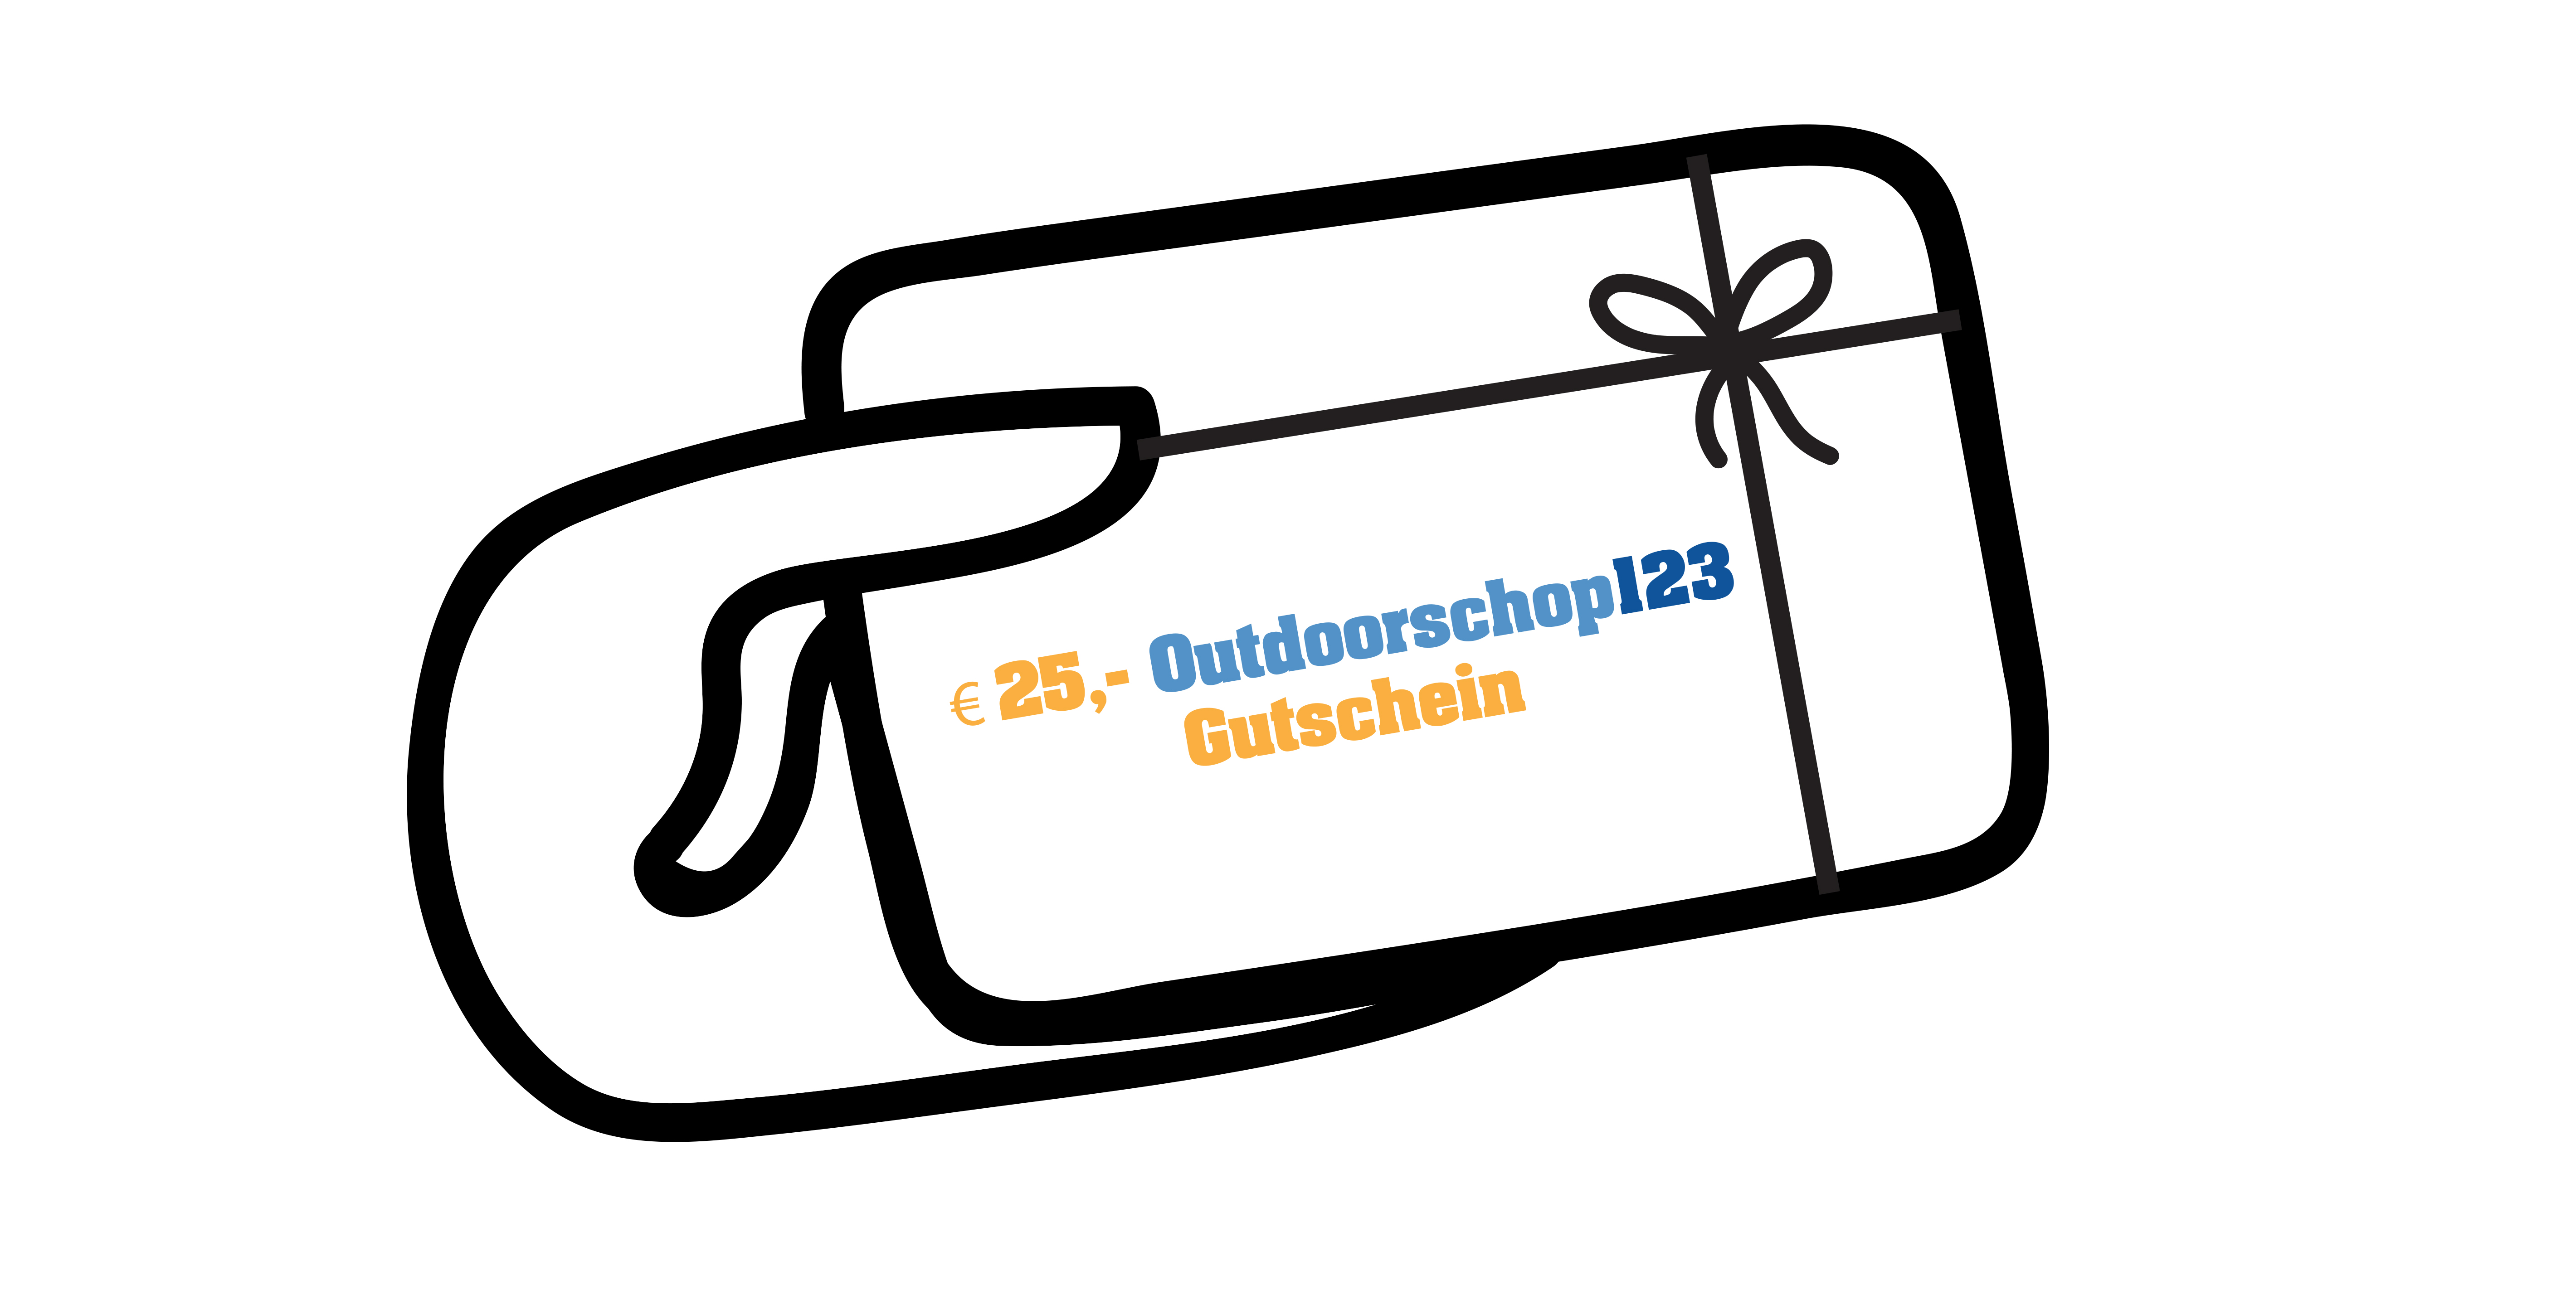 25Euro-Outdoorshop123-Gutschein-Symbol